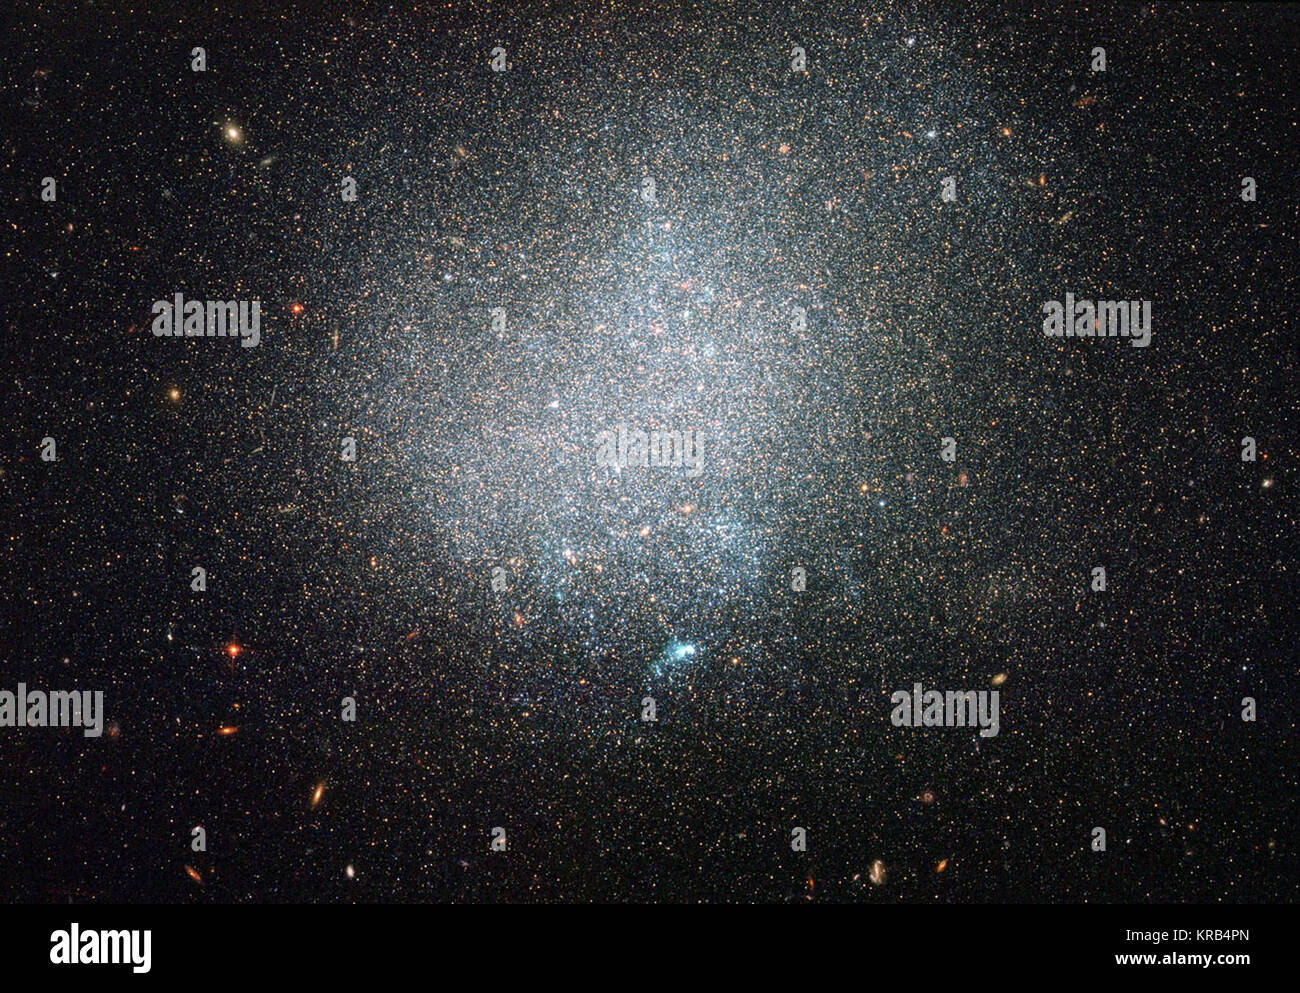 En termes de l'immobilier intergalactique, notre système solaire a un emplacement d'aplomb dans le cadre d'un grand, galaxie spirale, la Voie lactée. Nombreux, moins glamour des galaxies naines, garder la voie lactée company. De nombreuses galaxies, cependant, sont relativement isolées, sans voisins proches. Un tel exemple est la petite galaxie connue sous le nom de DDO 190, pris ici dans une nouvelle image de la NASA/ESA Hubble Space Telescope. DDO 190 est classée comme une galaxie irrégulière naine comme il est relativement petite et manque de structure claire. De plus, la plupart des étoiles rougeâtres peupler DDO 190 localité, tandis que certains jeunes, bleuâtre stars Banque D'Images